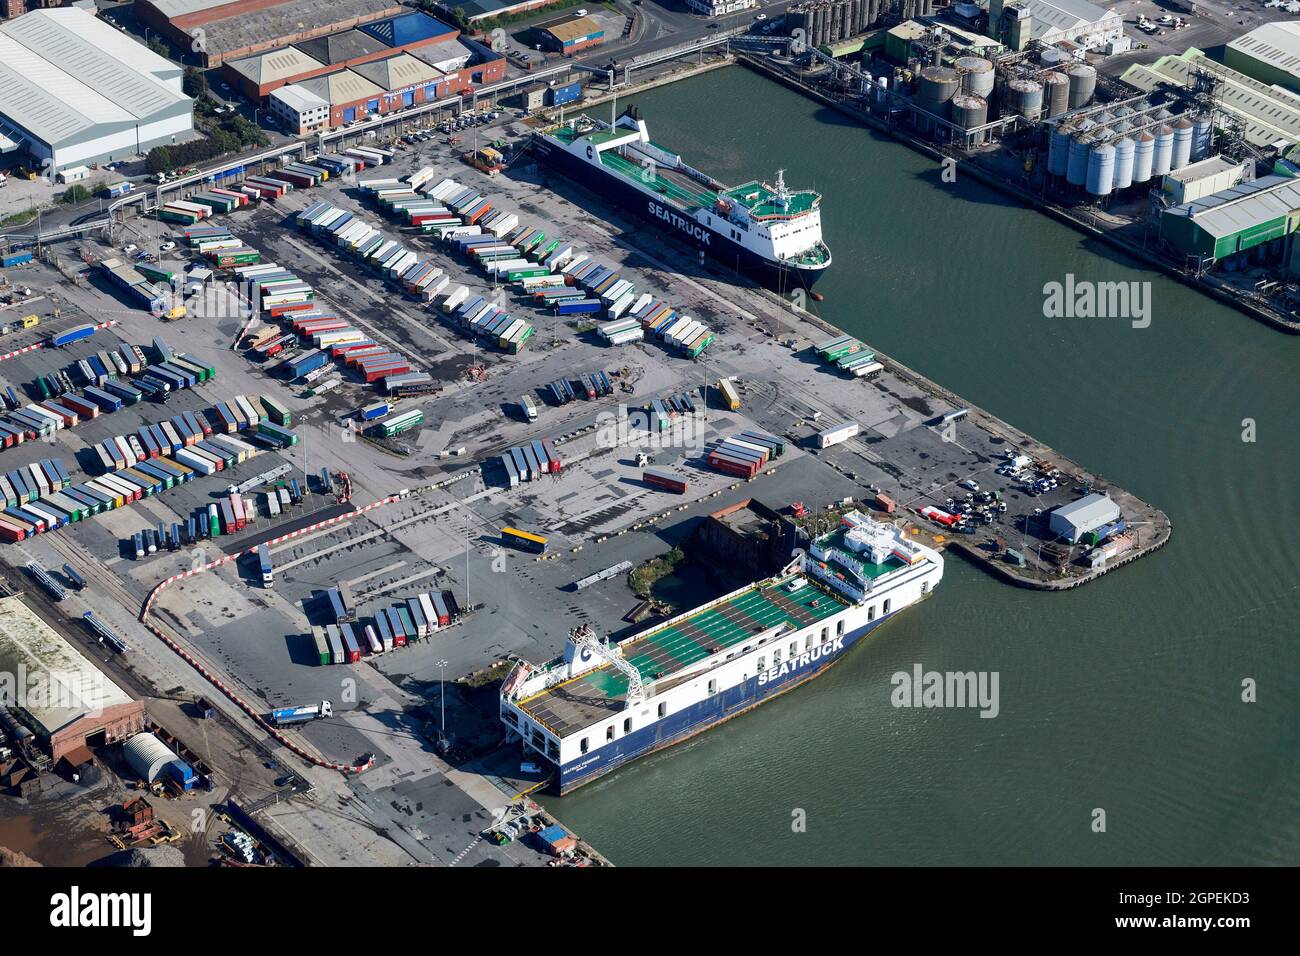 Los transbordadores de Seatruck cargan contenedores para viajar a Irlanda en Seaforth Docks, Liverpool, Merseyside, North West England, Reino Unido Foto de stock